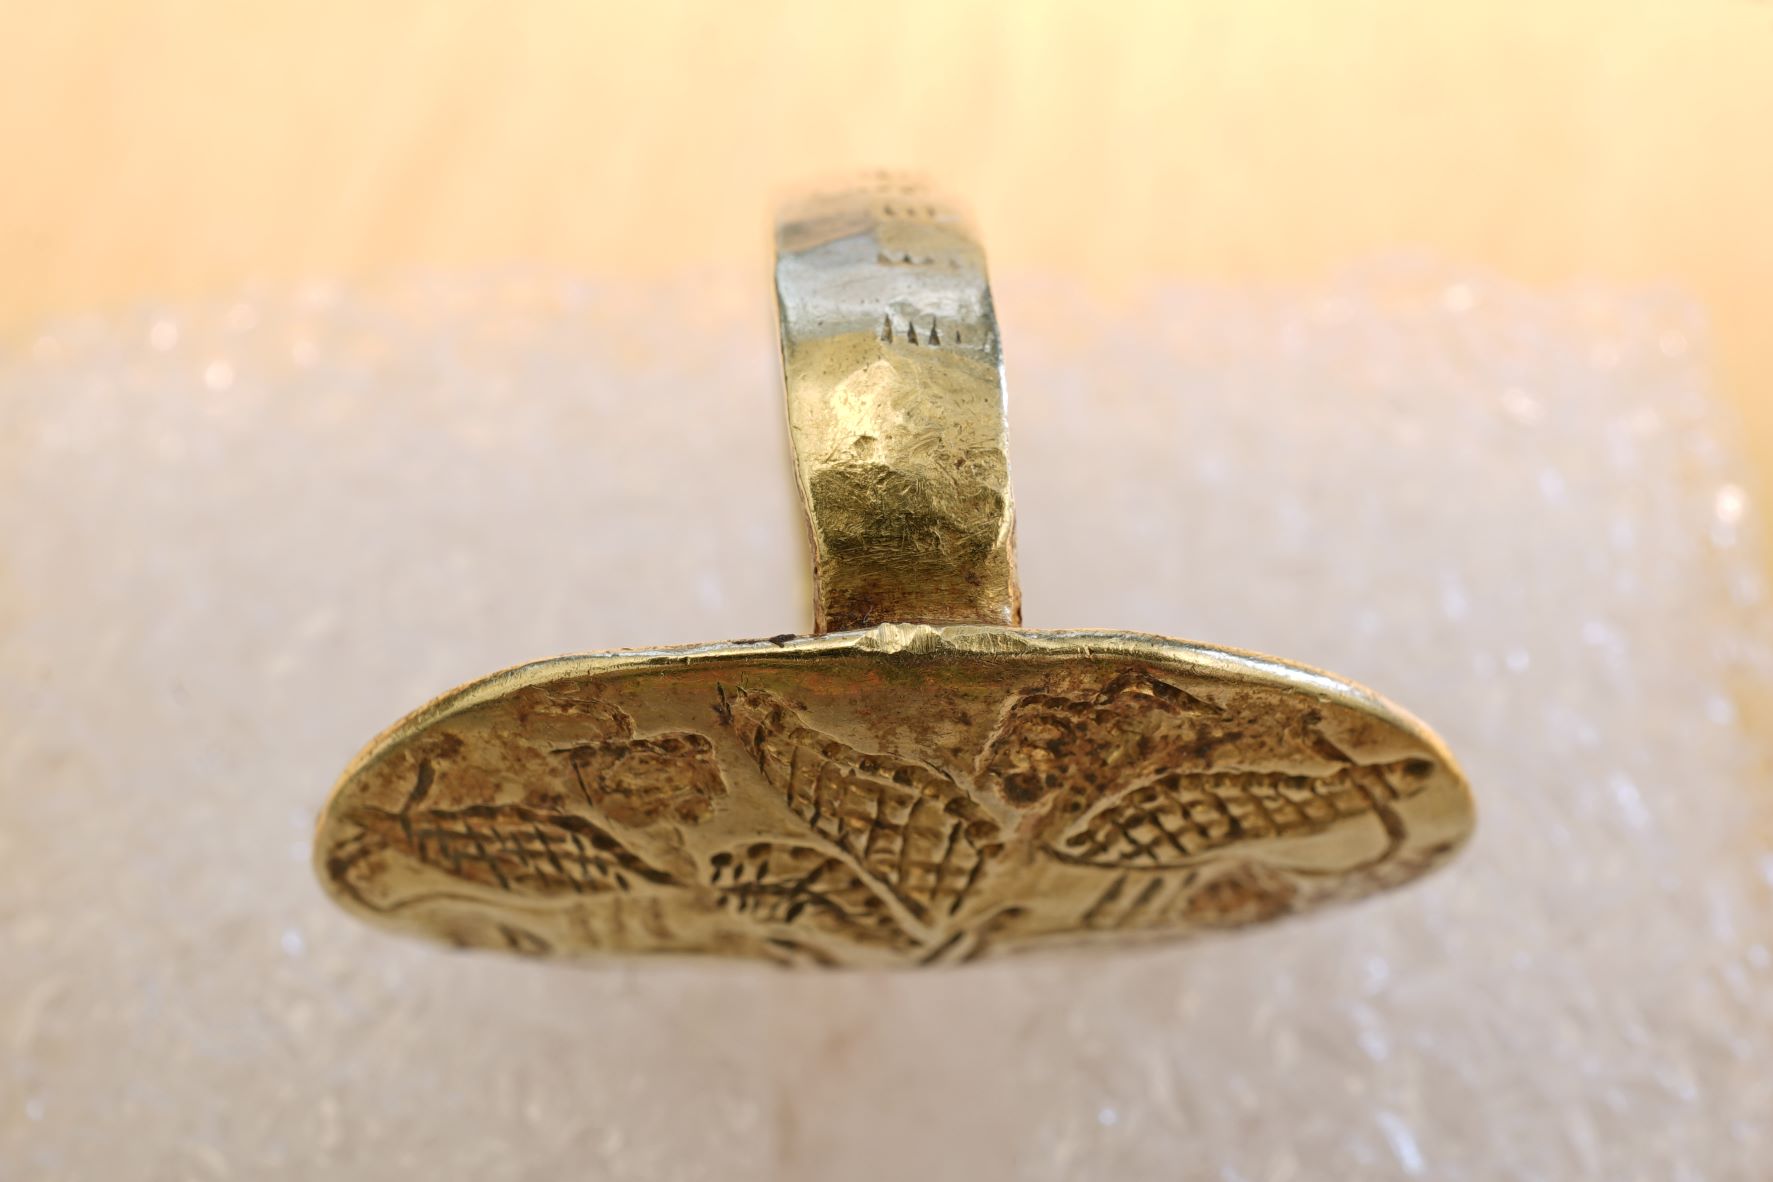 Χρυσό μυκηναϊκό δαχτυλίδι από την Ιαλυσό της Ρόδου με παράσταση ζεύγους αντωπών σφιγγών